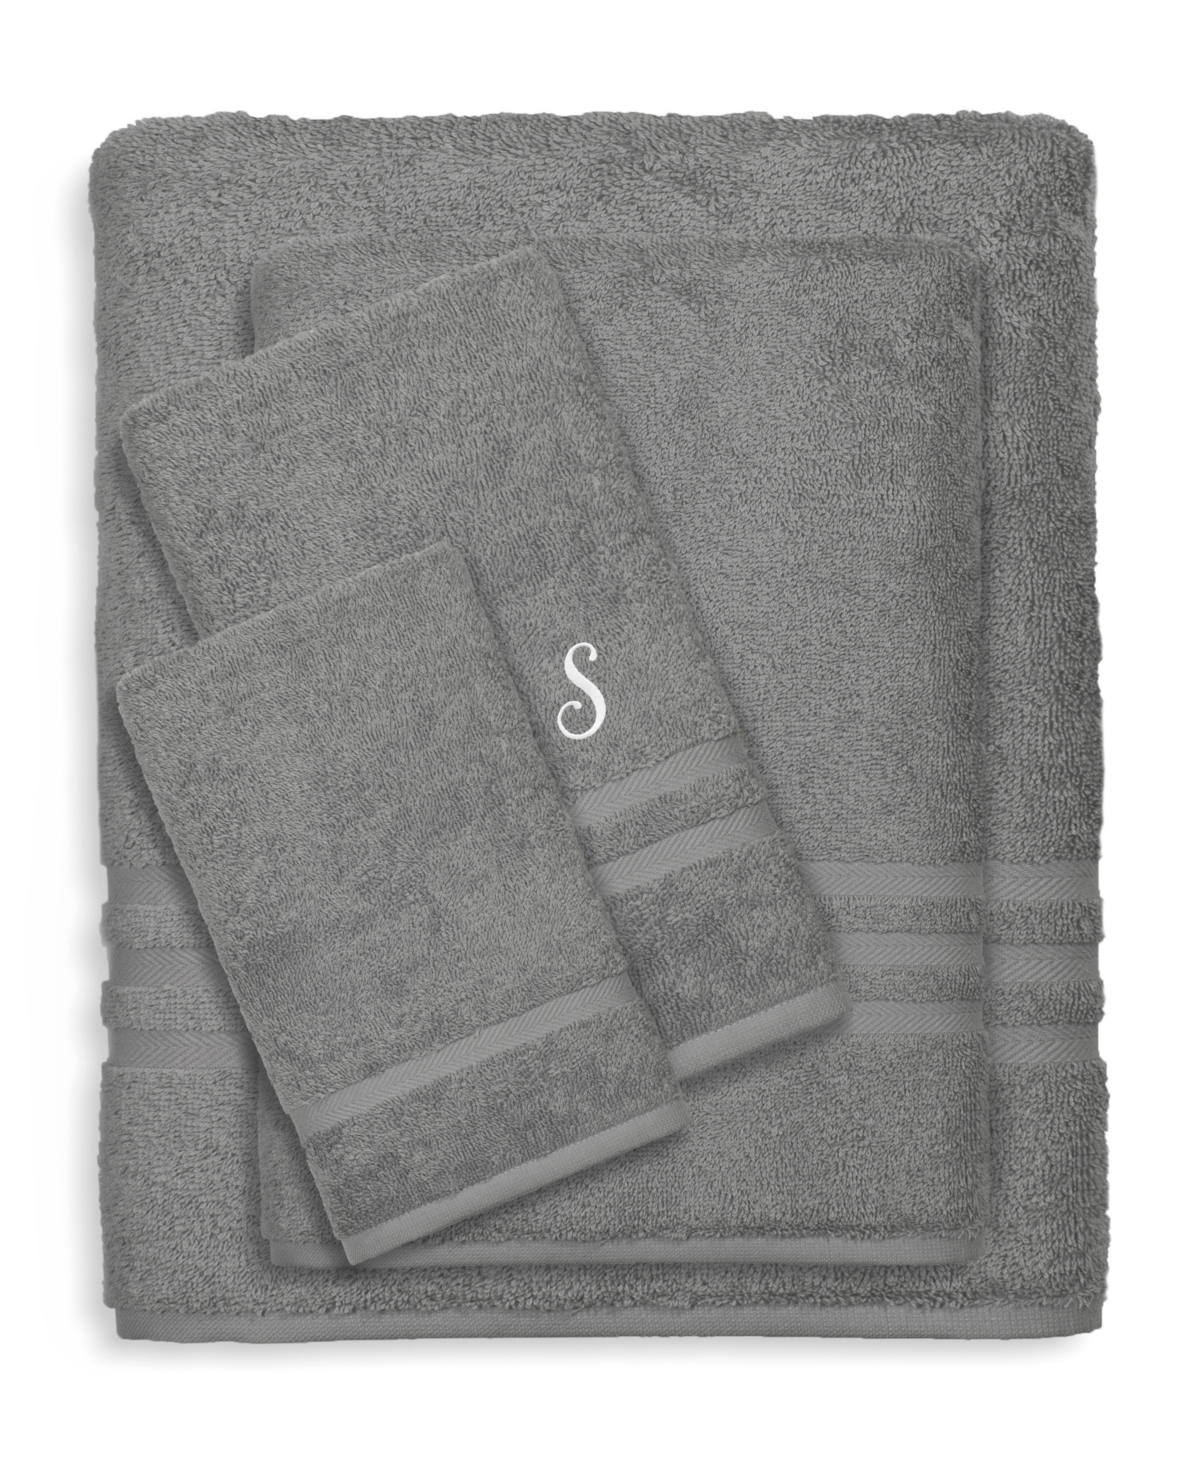 Linum Home Textiles Turkish Cotton Personalized Denzi Towel Set, 4 Piece Bedding